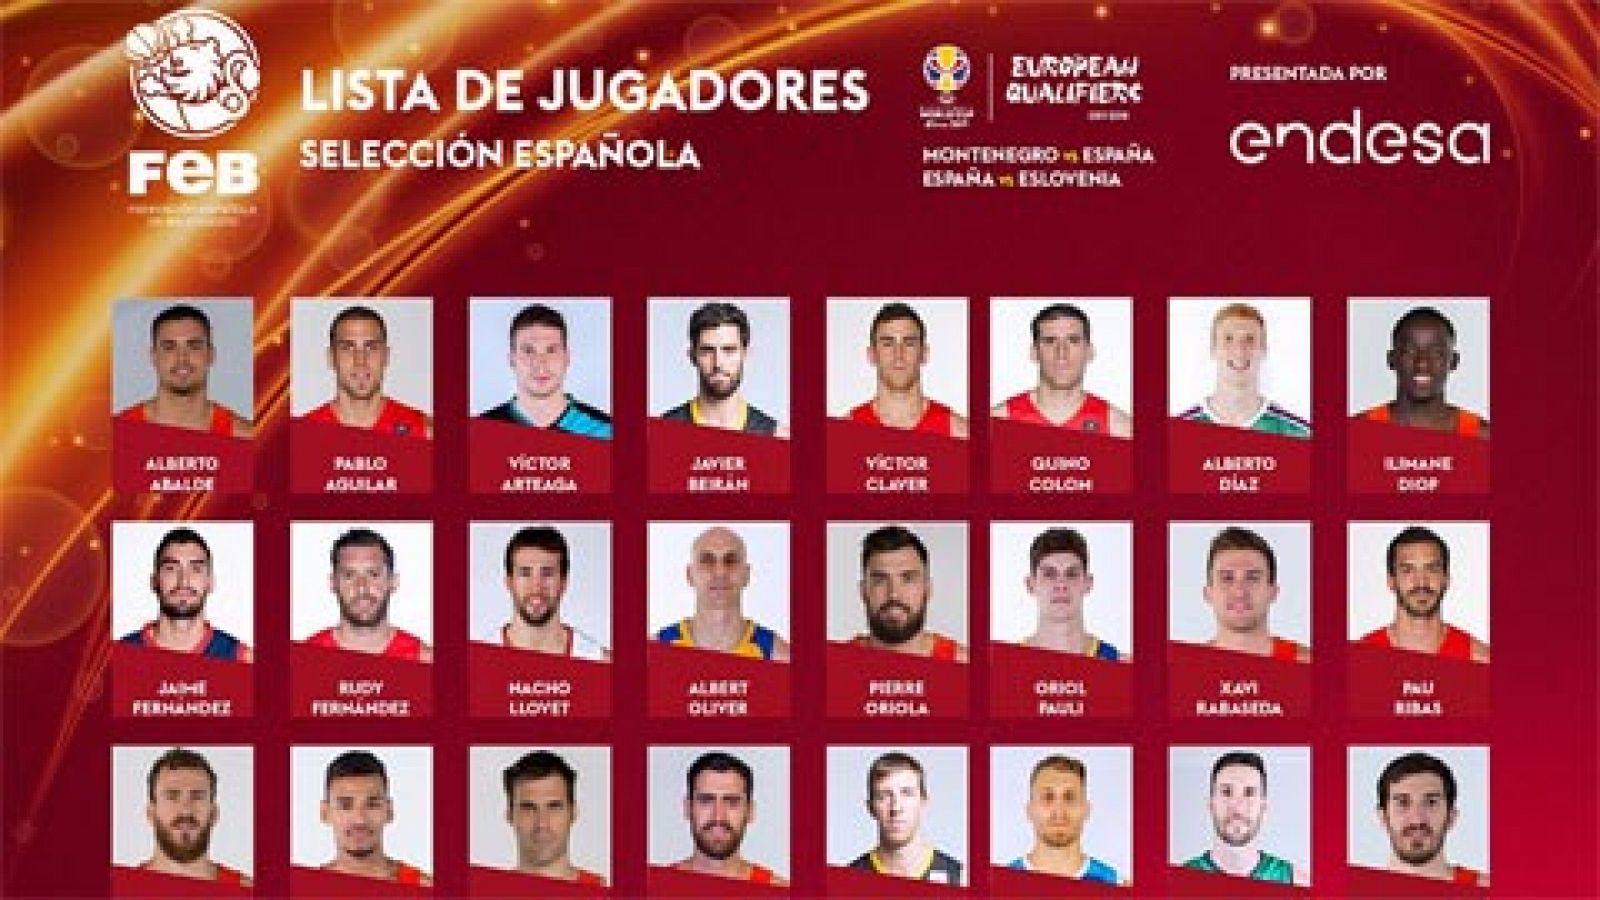 Once jugadores Euroliga convocados - RTVE.es